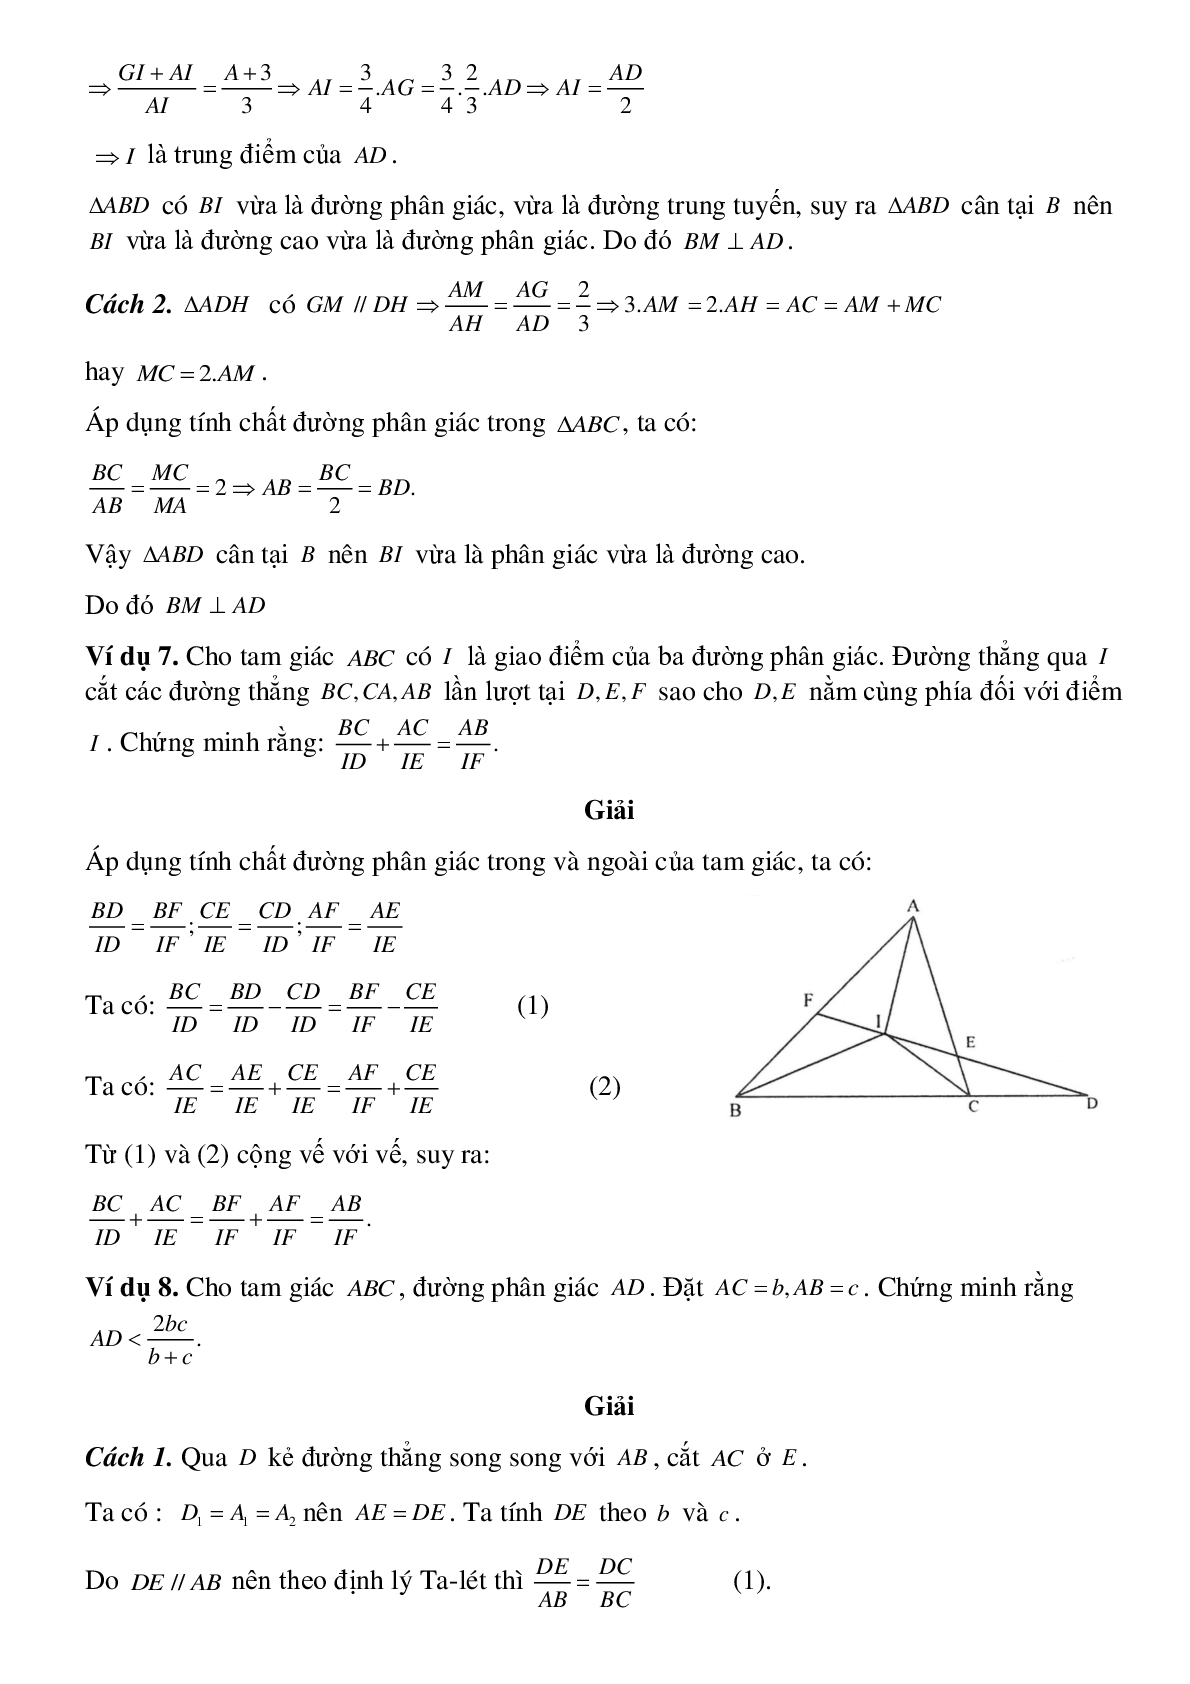 Tính chất đường phân giác của tam giác (trang 6)